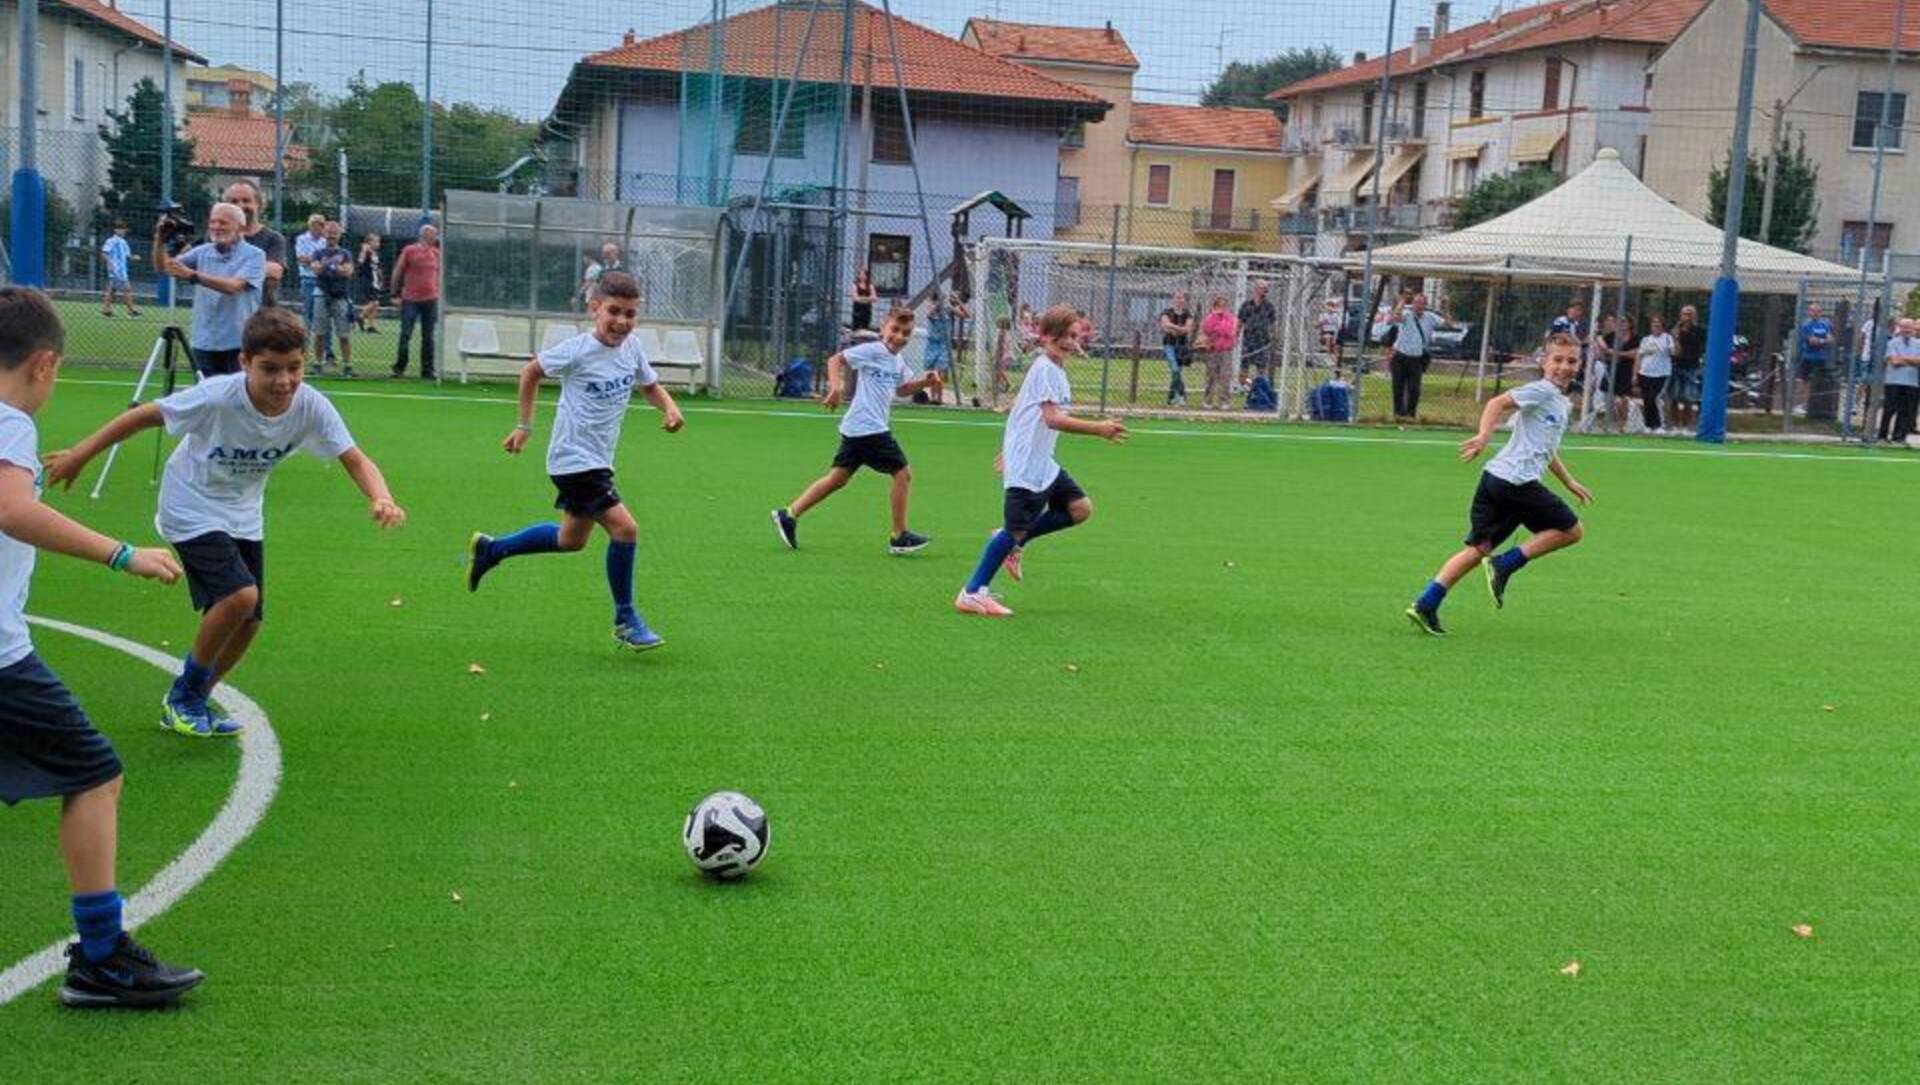 Saronno, grande festa con i giovani talenti del calcio saronnese per i nuovi campi all’Amor Sportiva (foto e video)